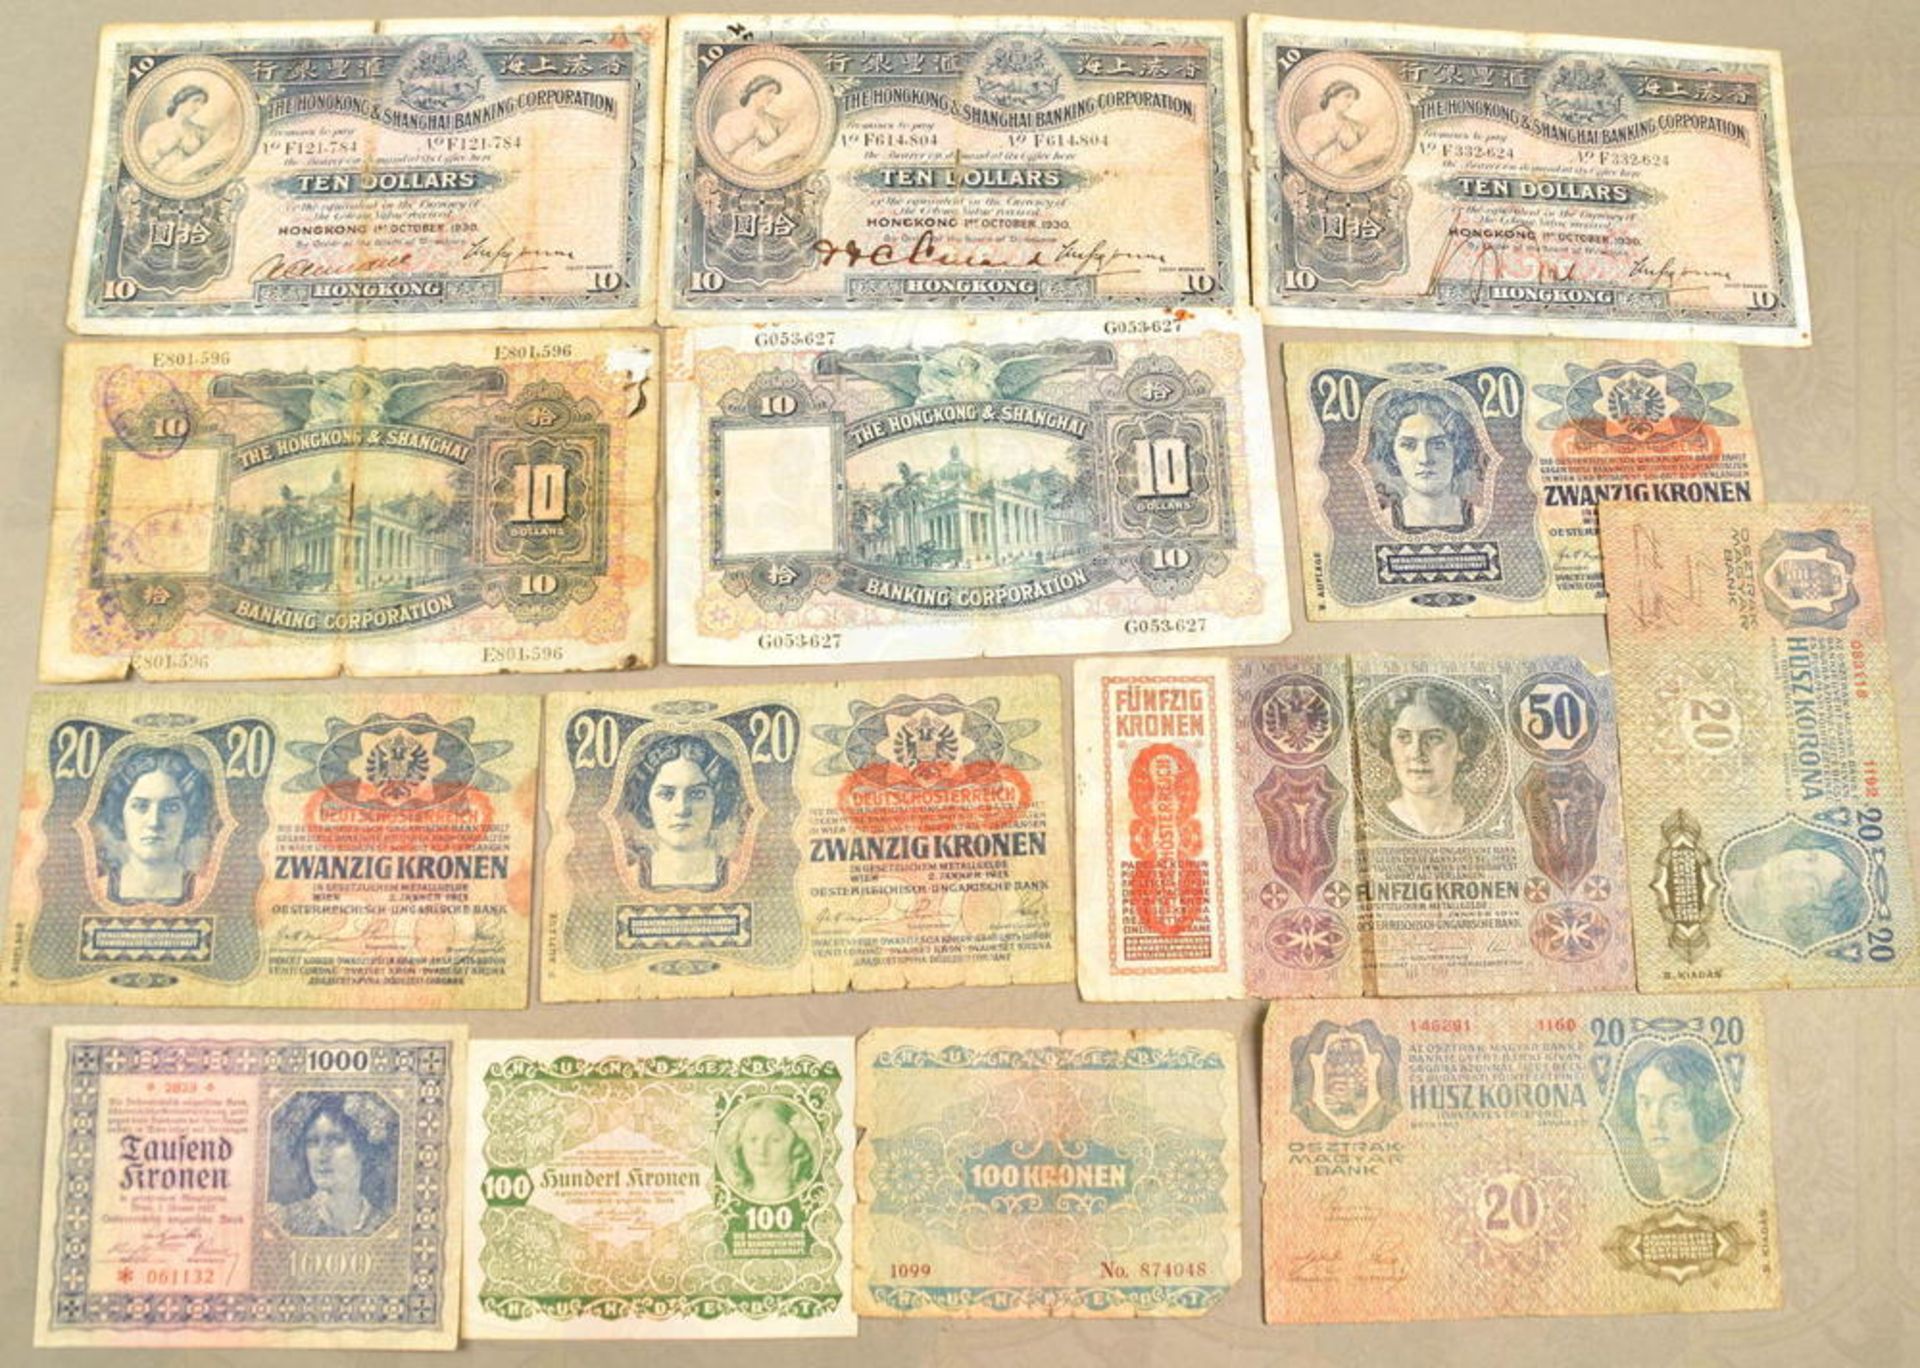 33 Banknoten - Image 2 of 2